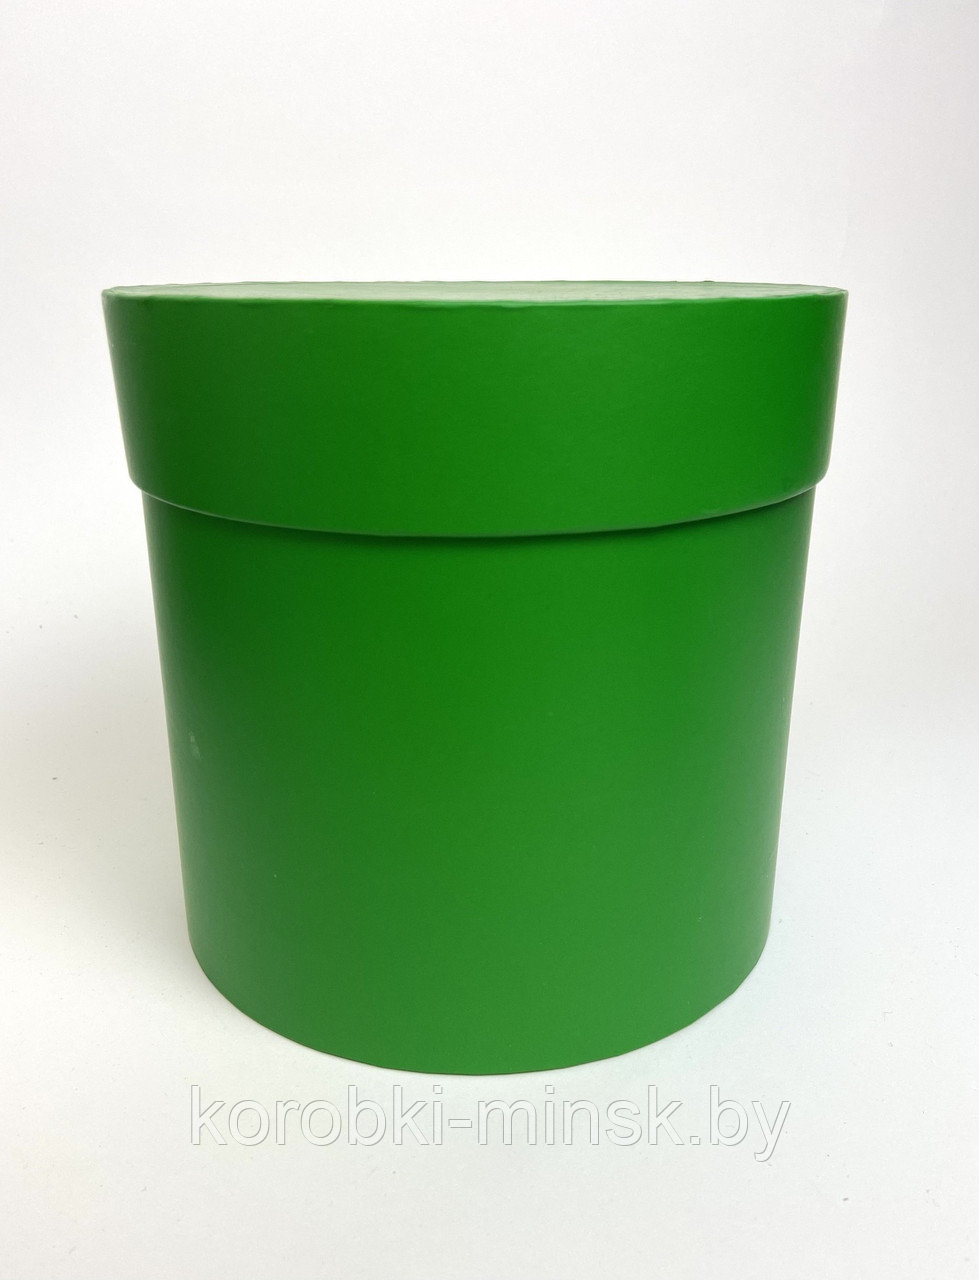 Шляпная коробка эконом вариант 18 см. Цвет: Лесной зеленый БЕЗ ЛЕНТЫ